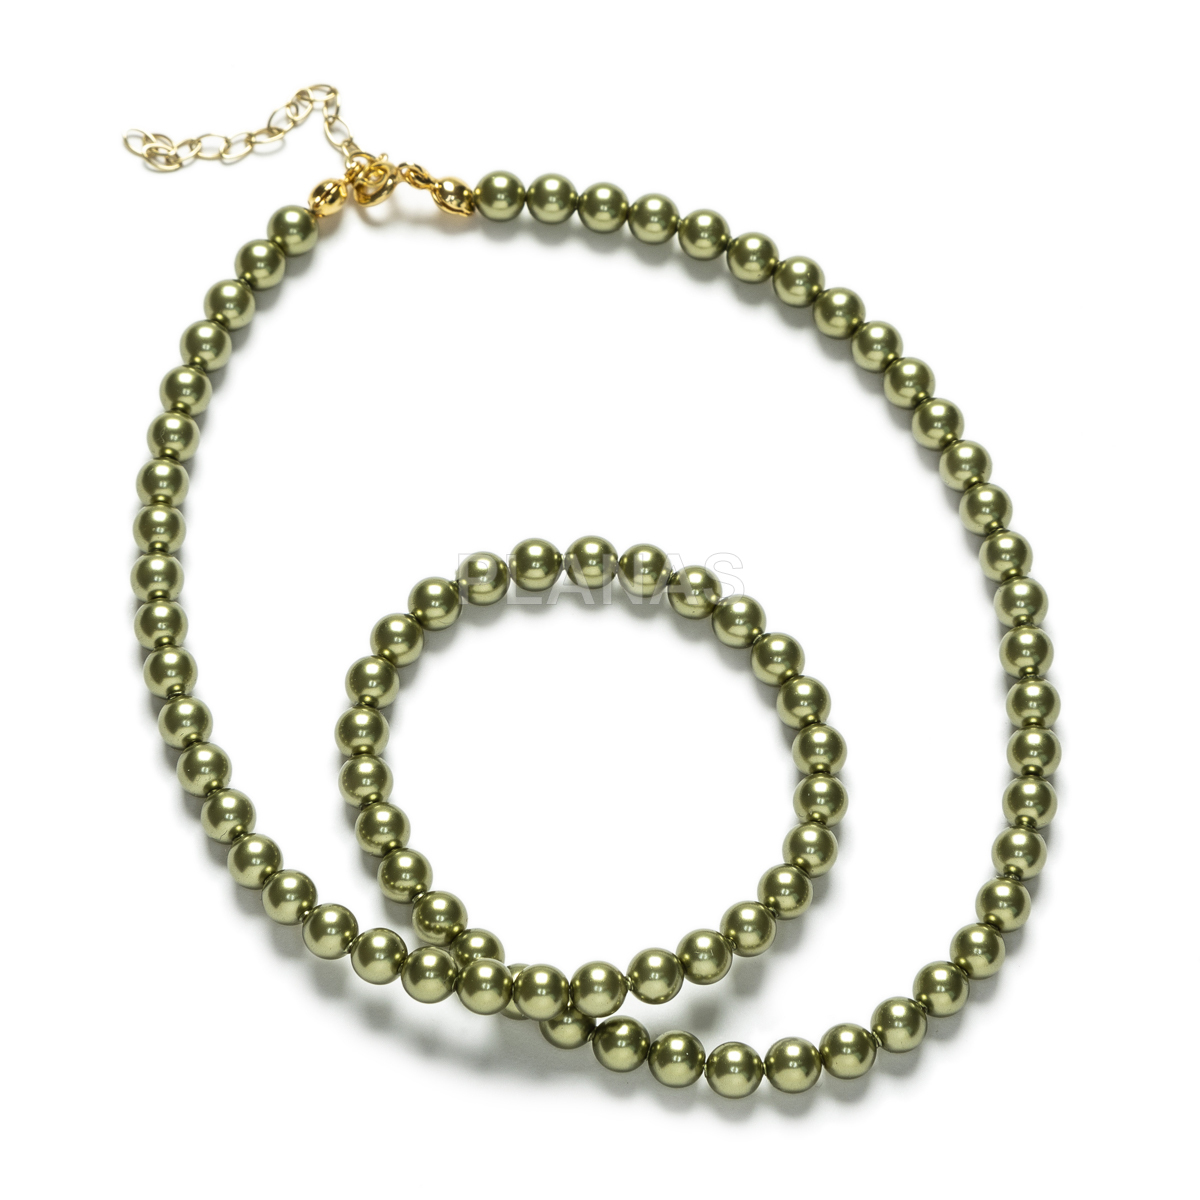 Conjunto de Collar y Pulsera en Plata de ley y Baño Oro Perlas de primera calidad en 5mm. Color Verde Oliva.